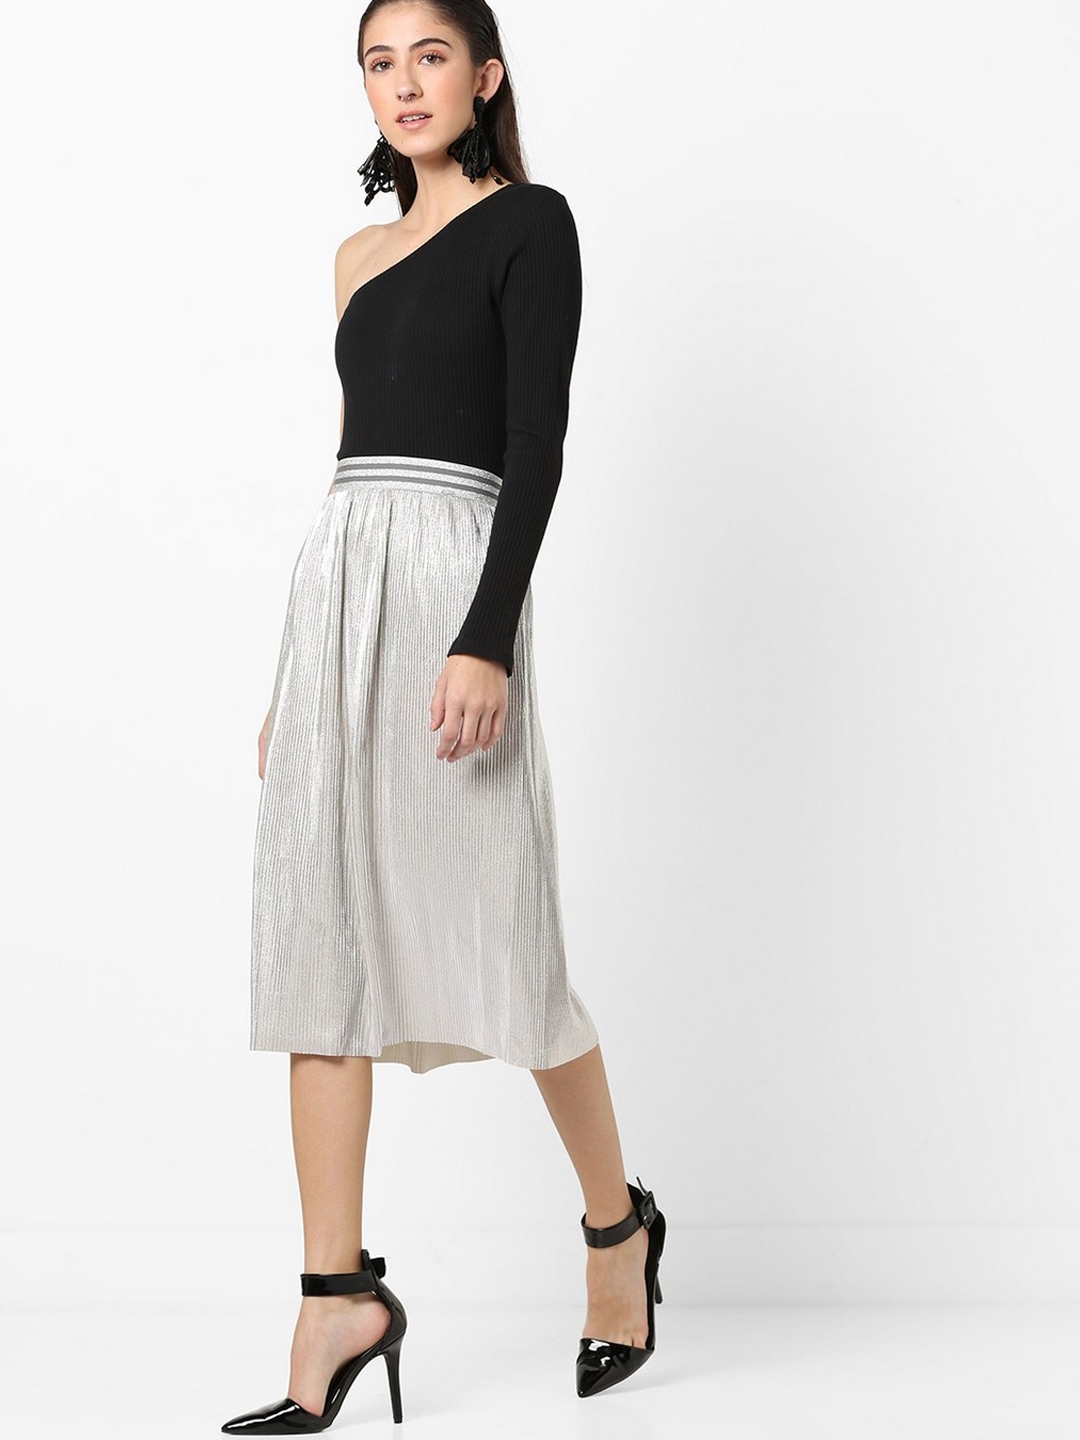 Women's midi length Liber skirt